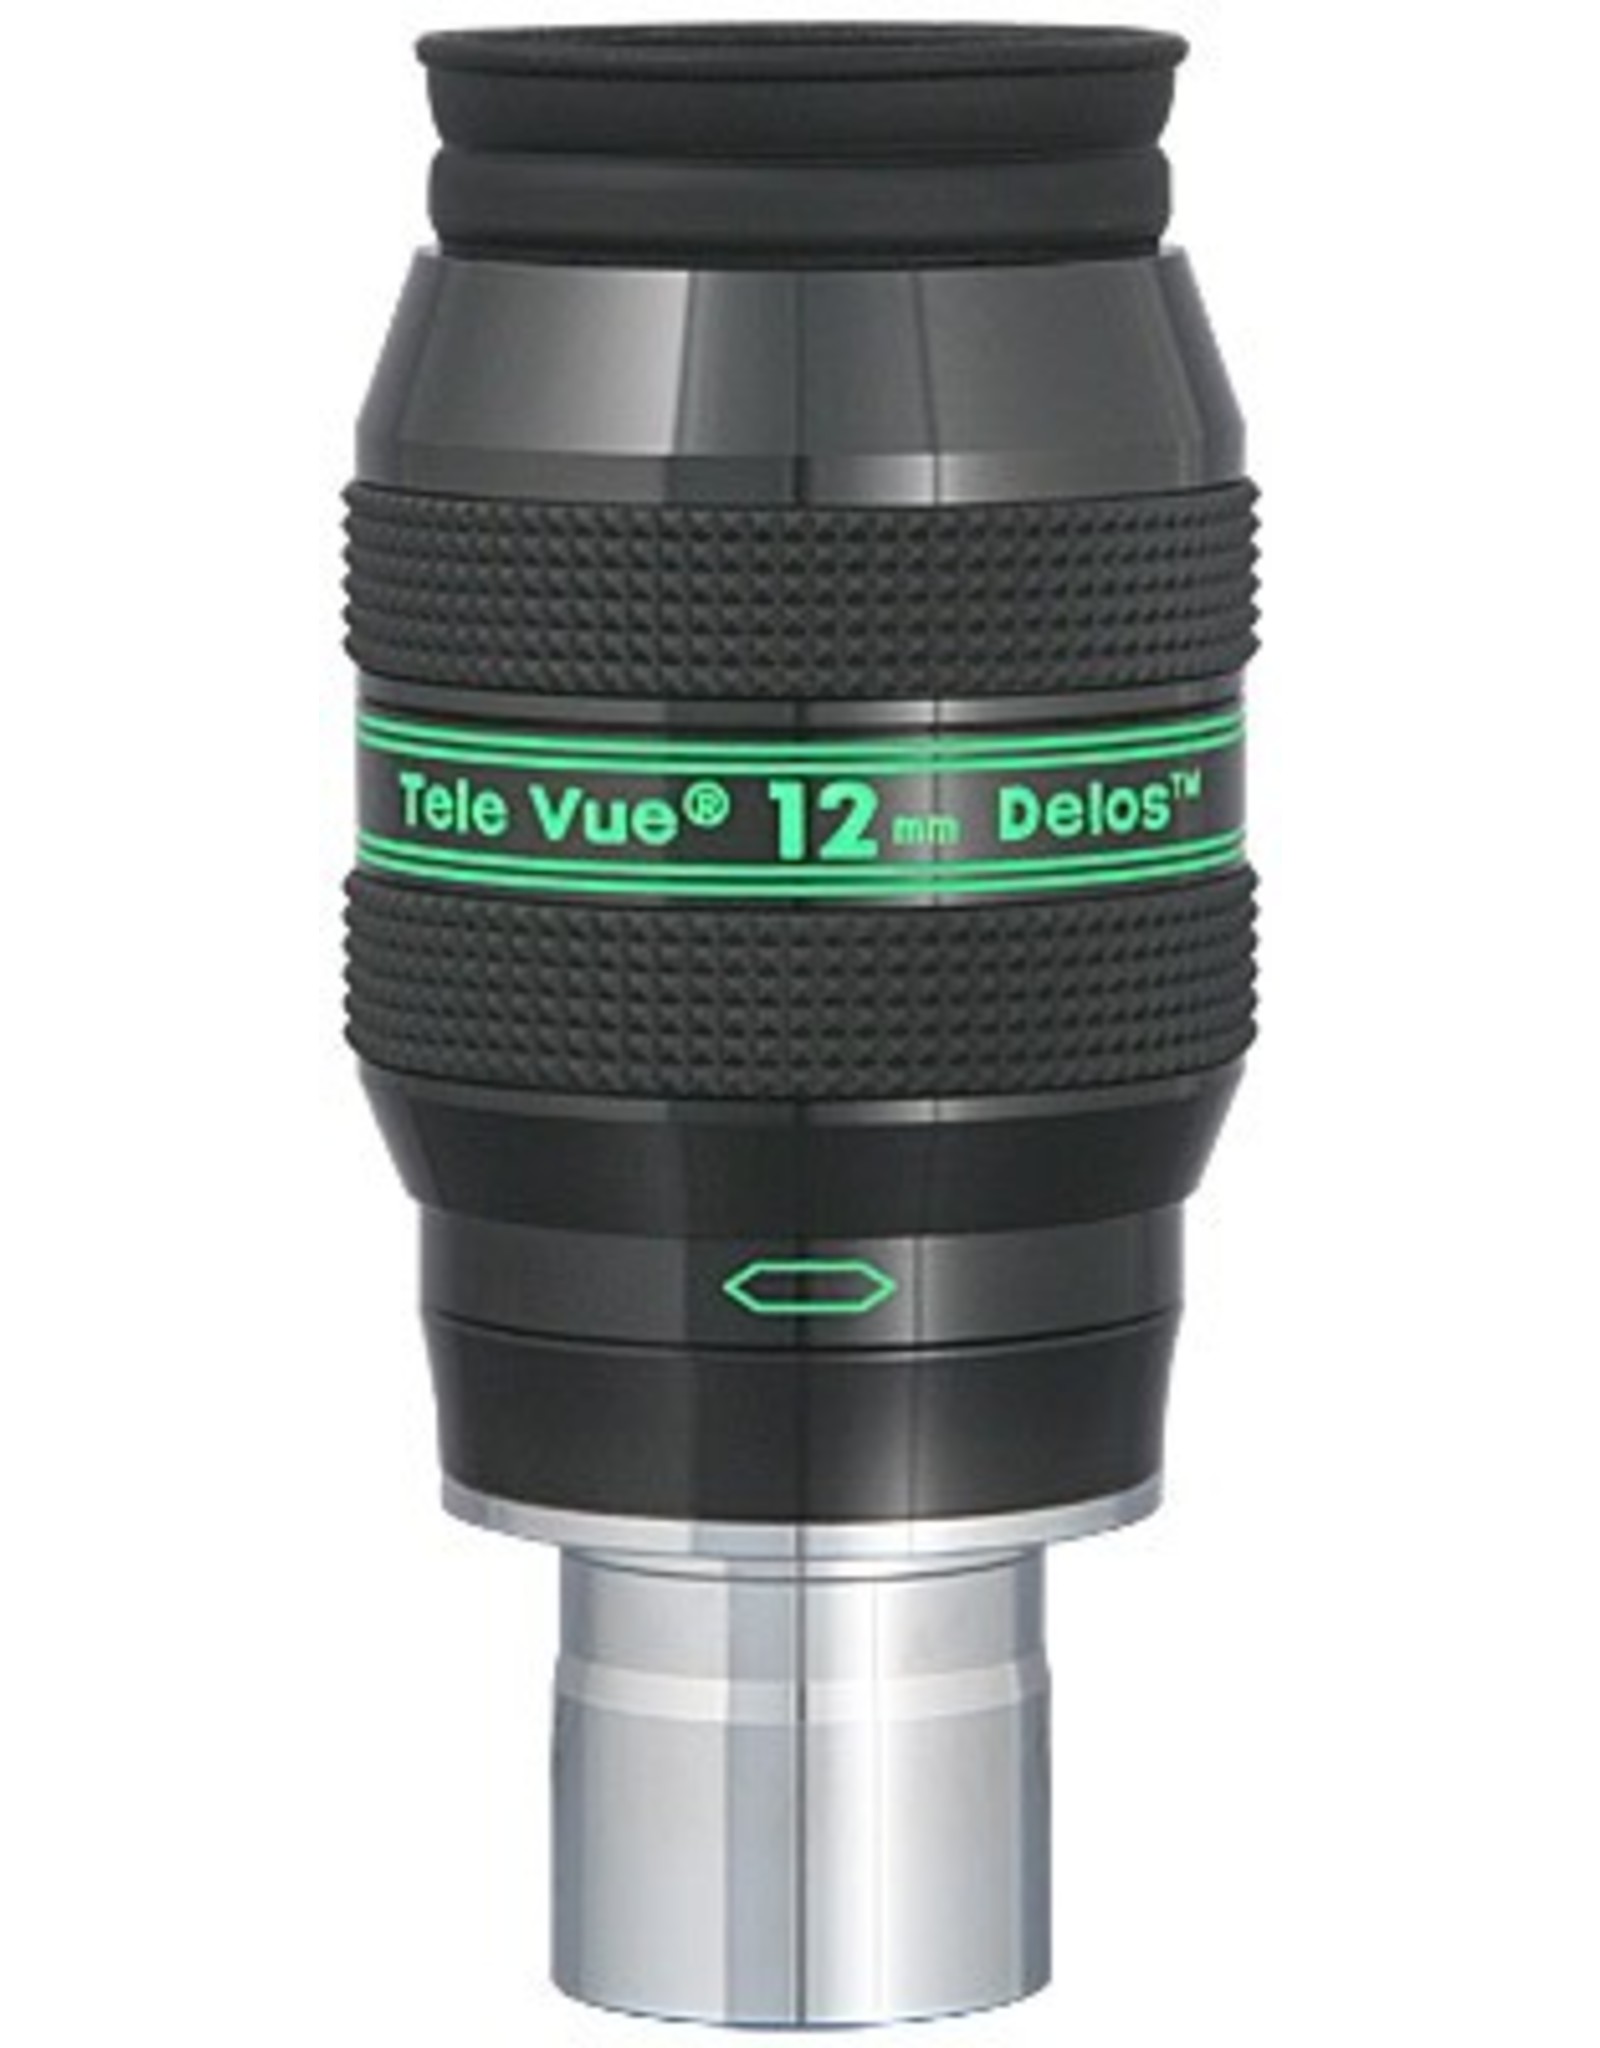 Tele Vue Delos 12mm Eyepiece - 1.25